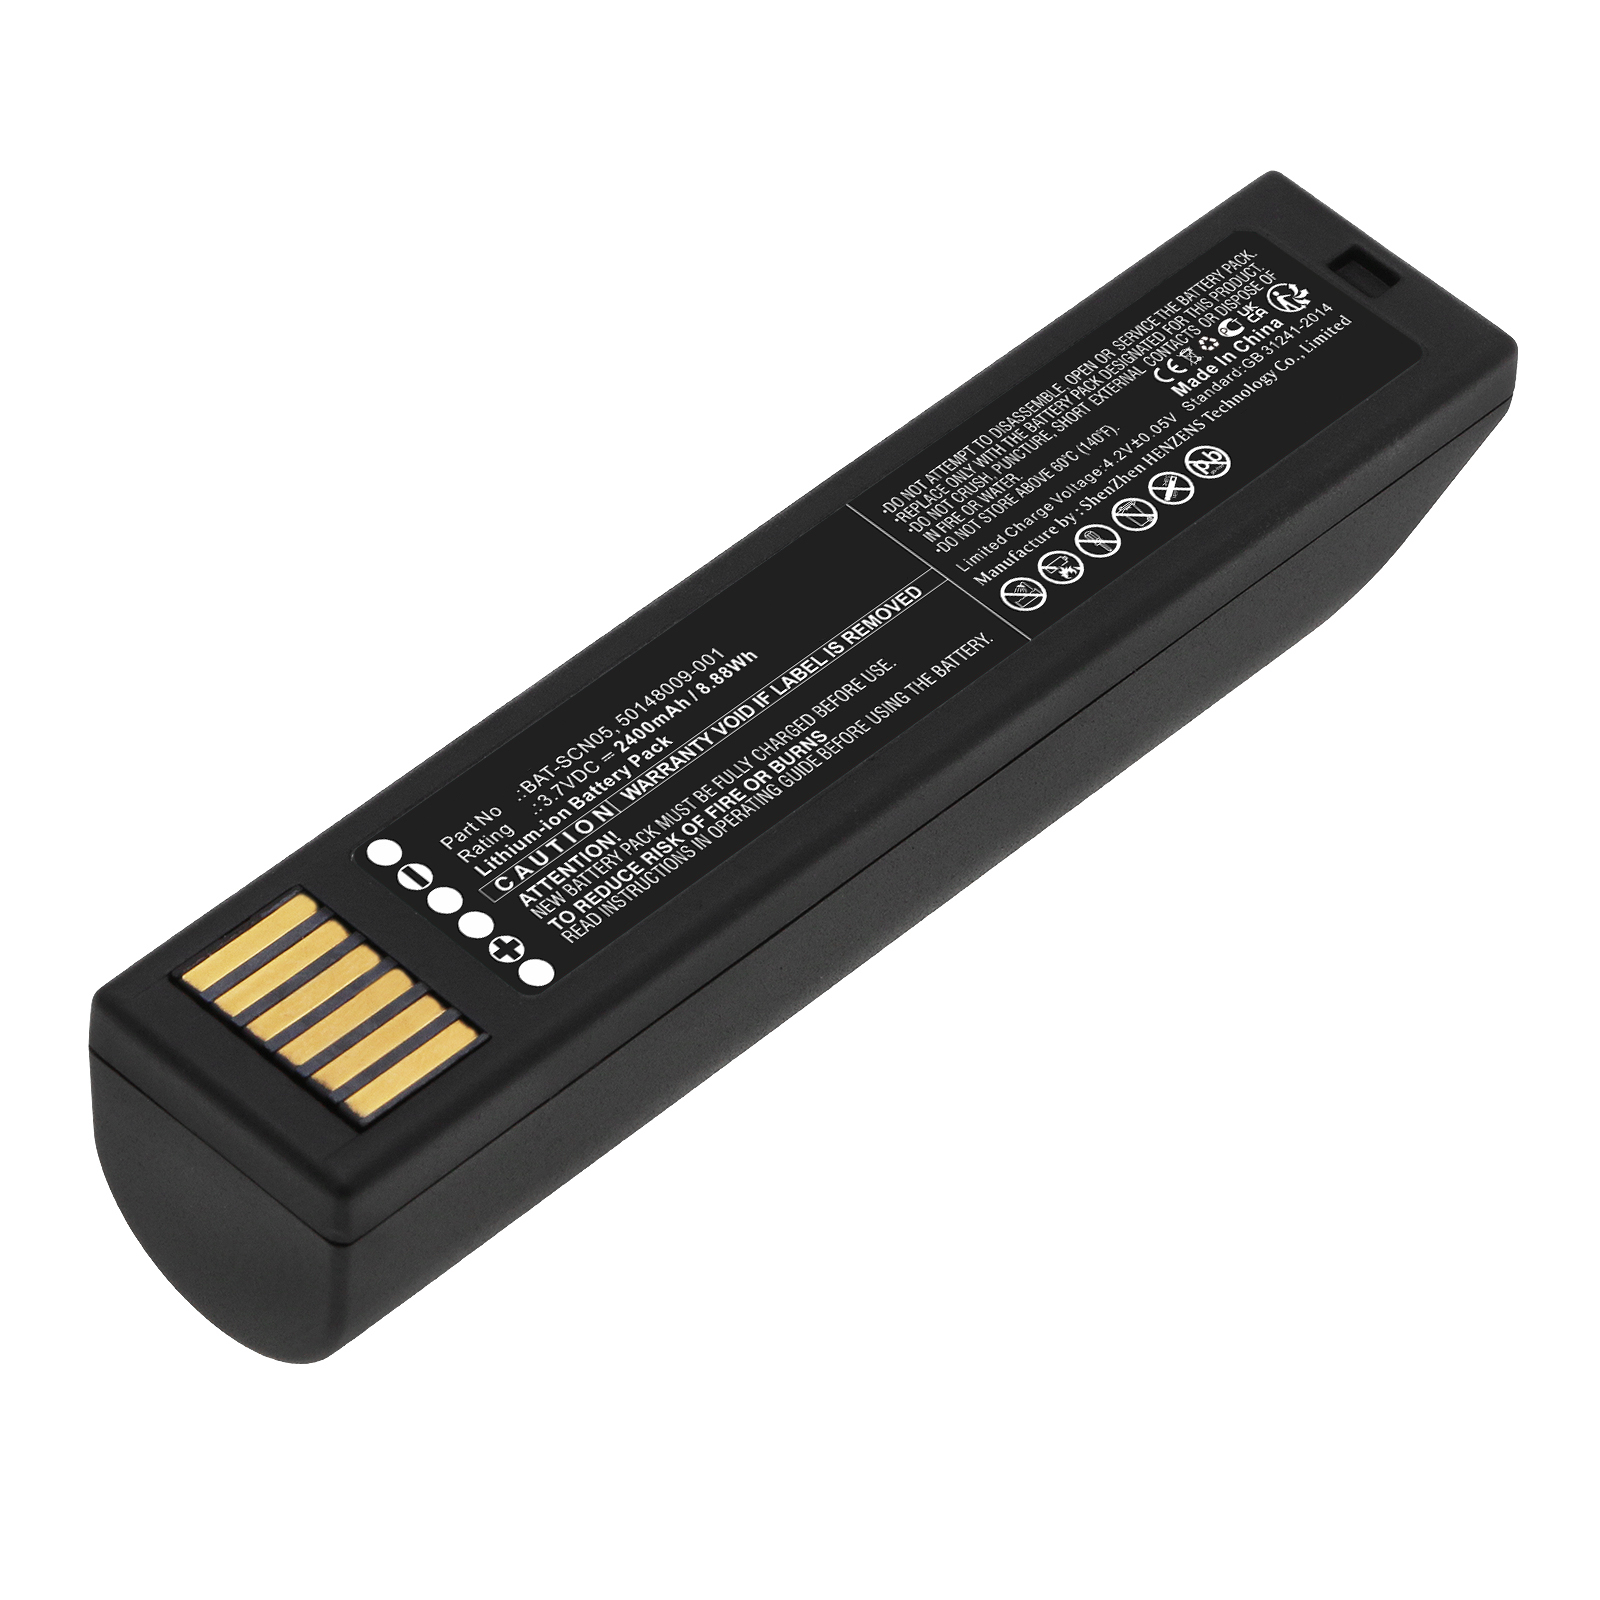 Synergy Digital Barcode Scanner Battery, Compatible with Honeywell 50148009-001 Barcode Scanner Battery (Li-ion, 3.7V, 2400mAh)